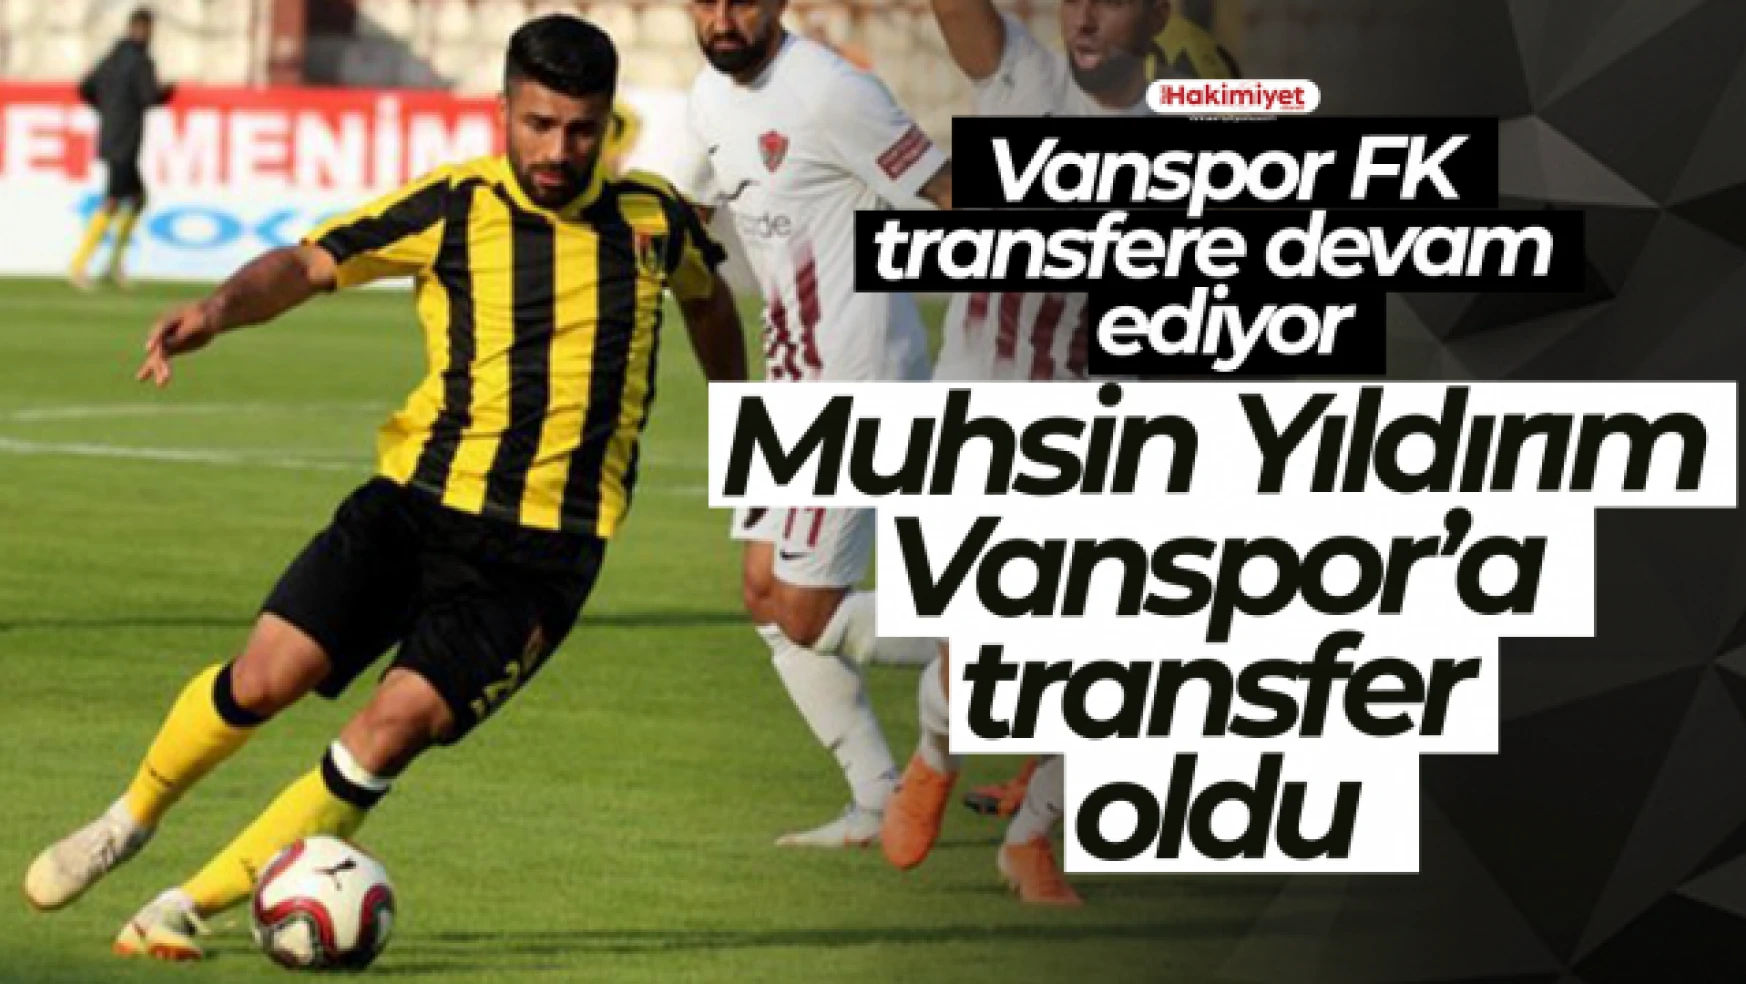 Vanspor FK Muhsin Yıldırım'ı renklerine bağladı